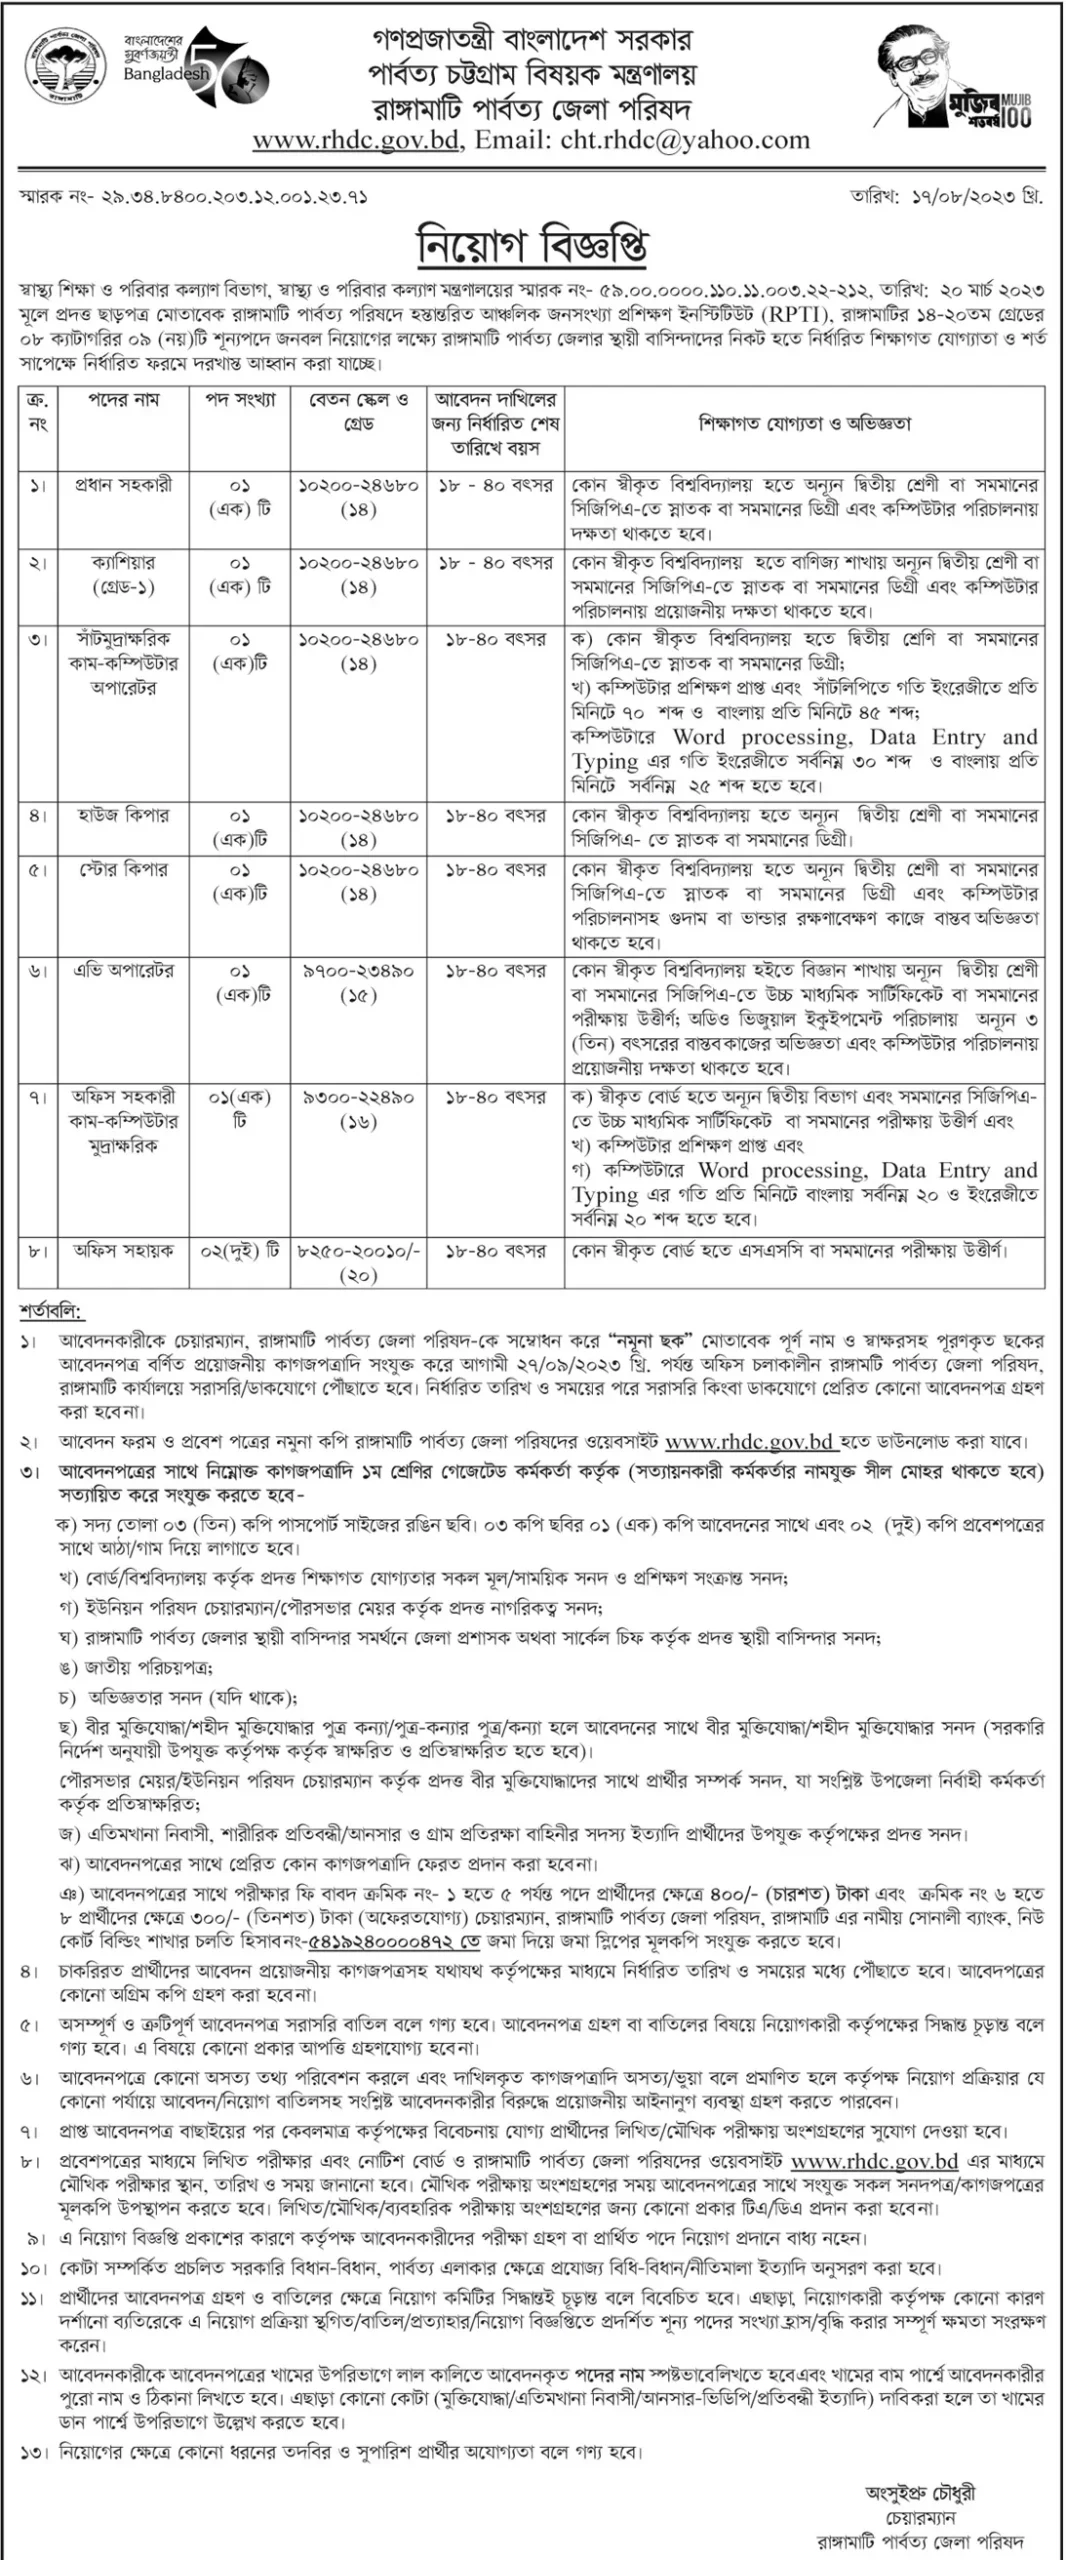 District Hill Council Job Circular 2023 । পার্বত্য চট্টগ্রামসহ জেলা হিল কাউন্সিল নিয়োগ বিজ্ঞপ্তি দেখুন